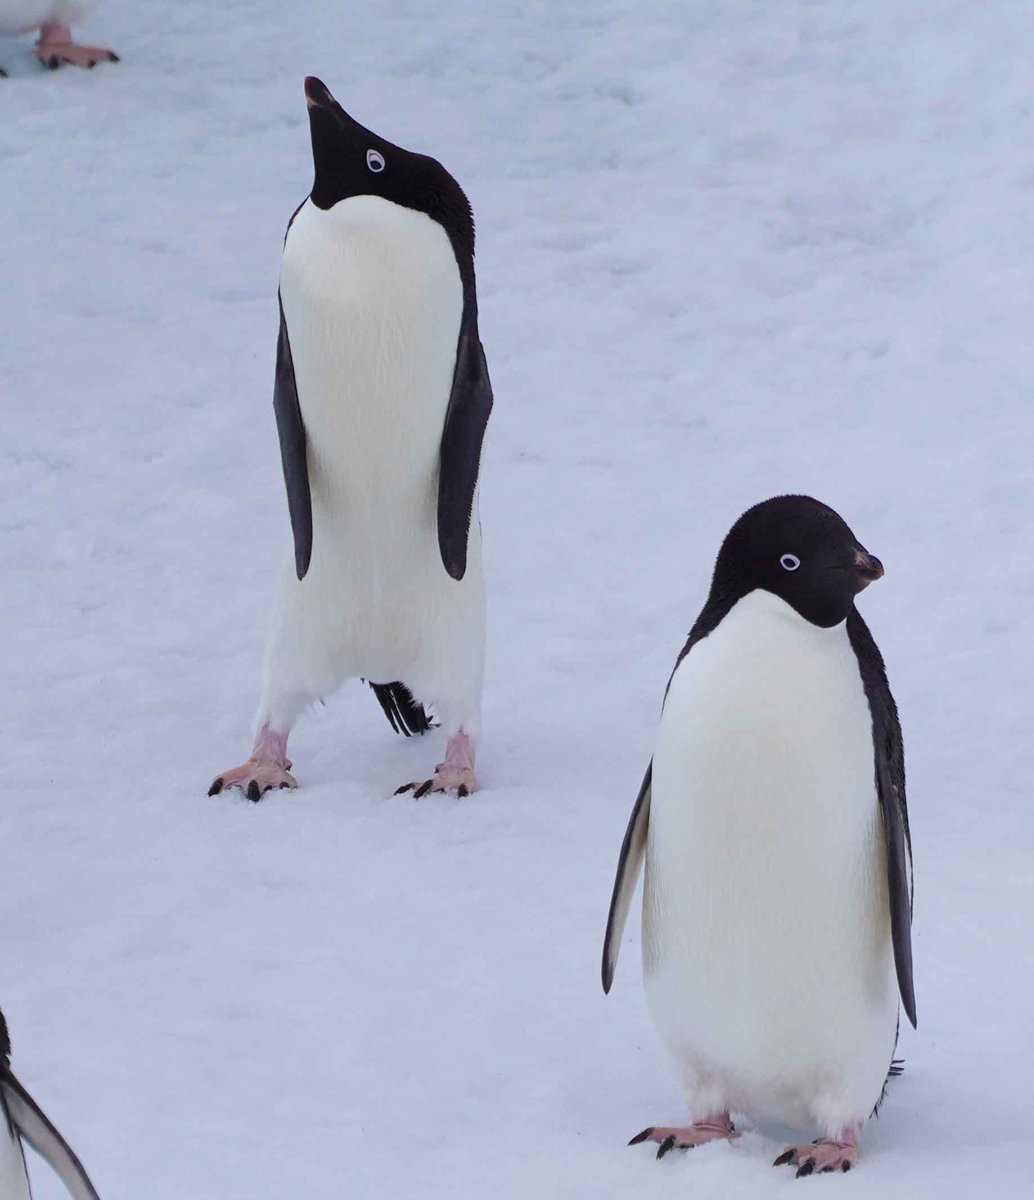 10日（水）午後7時半～8時頃予定、南極・昭和基地からYou Tube ライブ配信！URL→  61次越冬隊が南極の自然や観測、暮らしをご紹介します。「#南極ライブ2020」をつけたご質問のツィート募集中です。拡散希望（^^/  #南極 